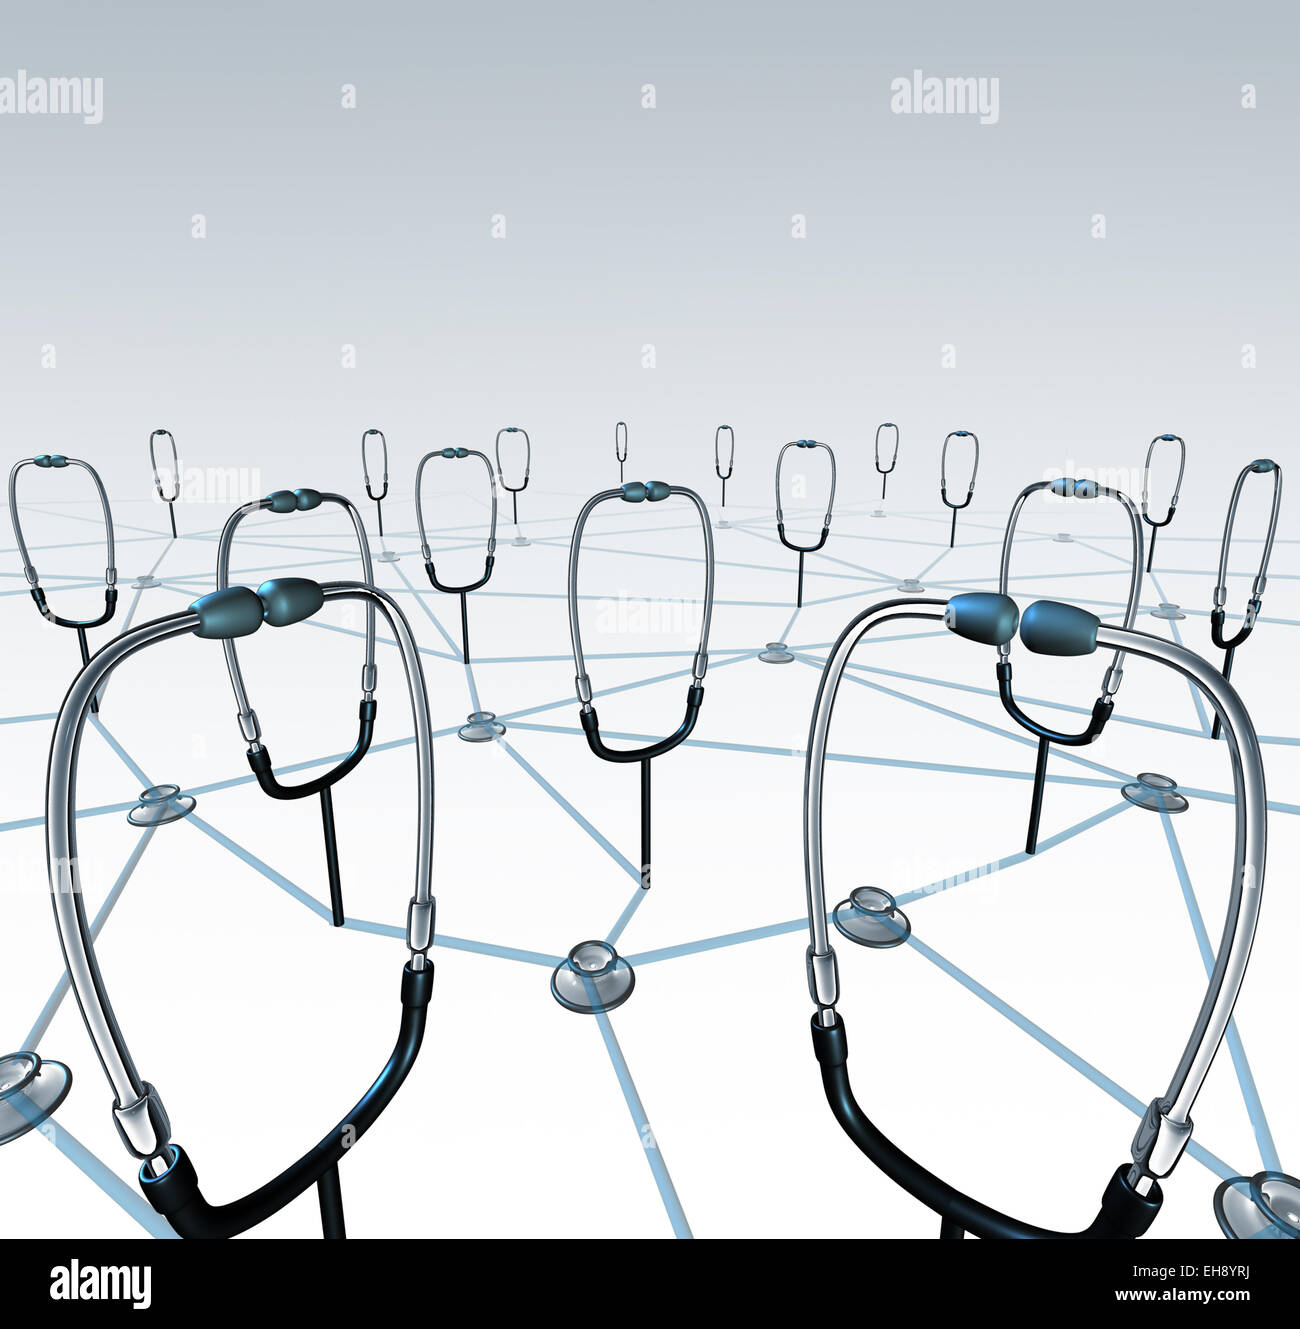 Arzt-Netzwerk und medizinische Aufzeichnungen austauschen Konzept als eine Gruppe von verbundenen Arzt Stethoskope, gemeinsame Nutzung von Daten durch ein virtuelles Netzwerk-Gesundheitssystem. Stockfoto